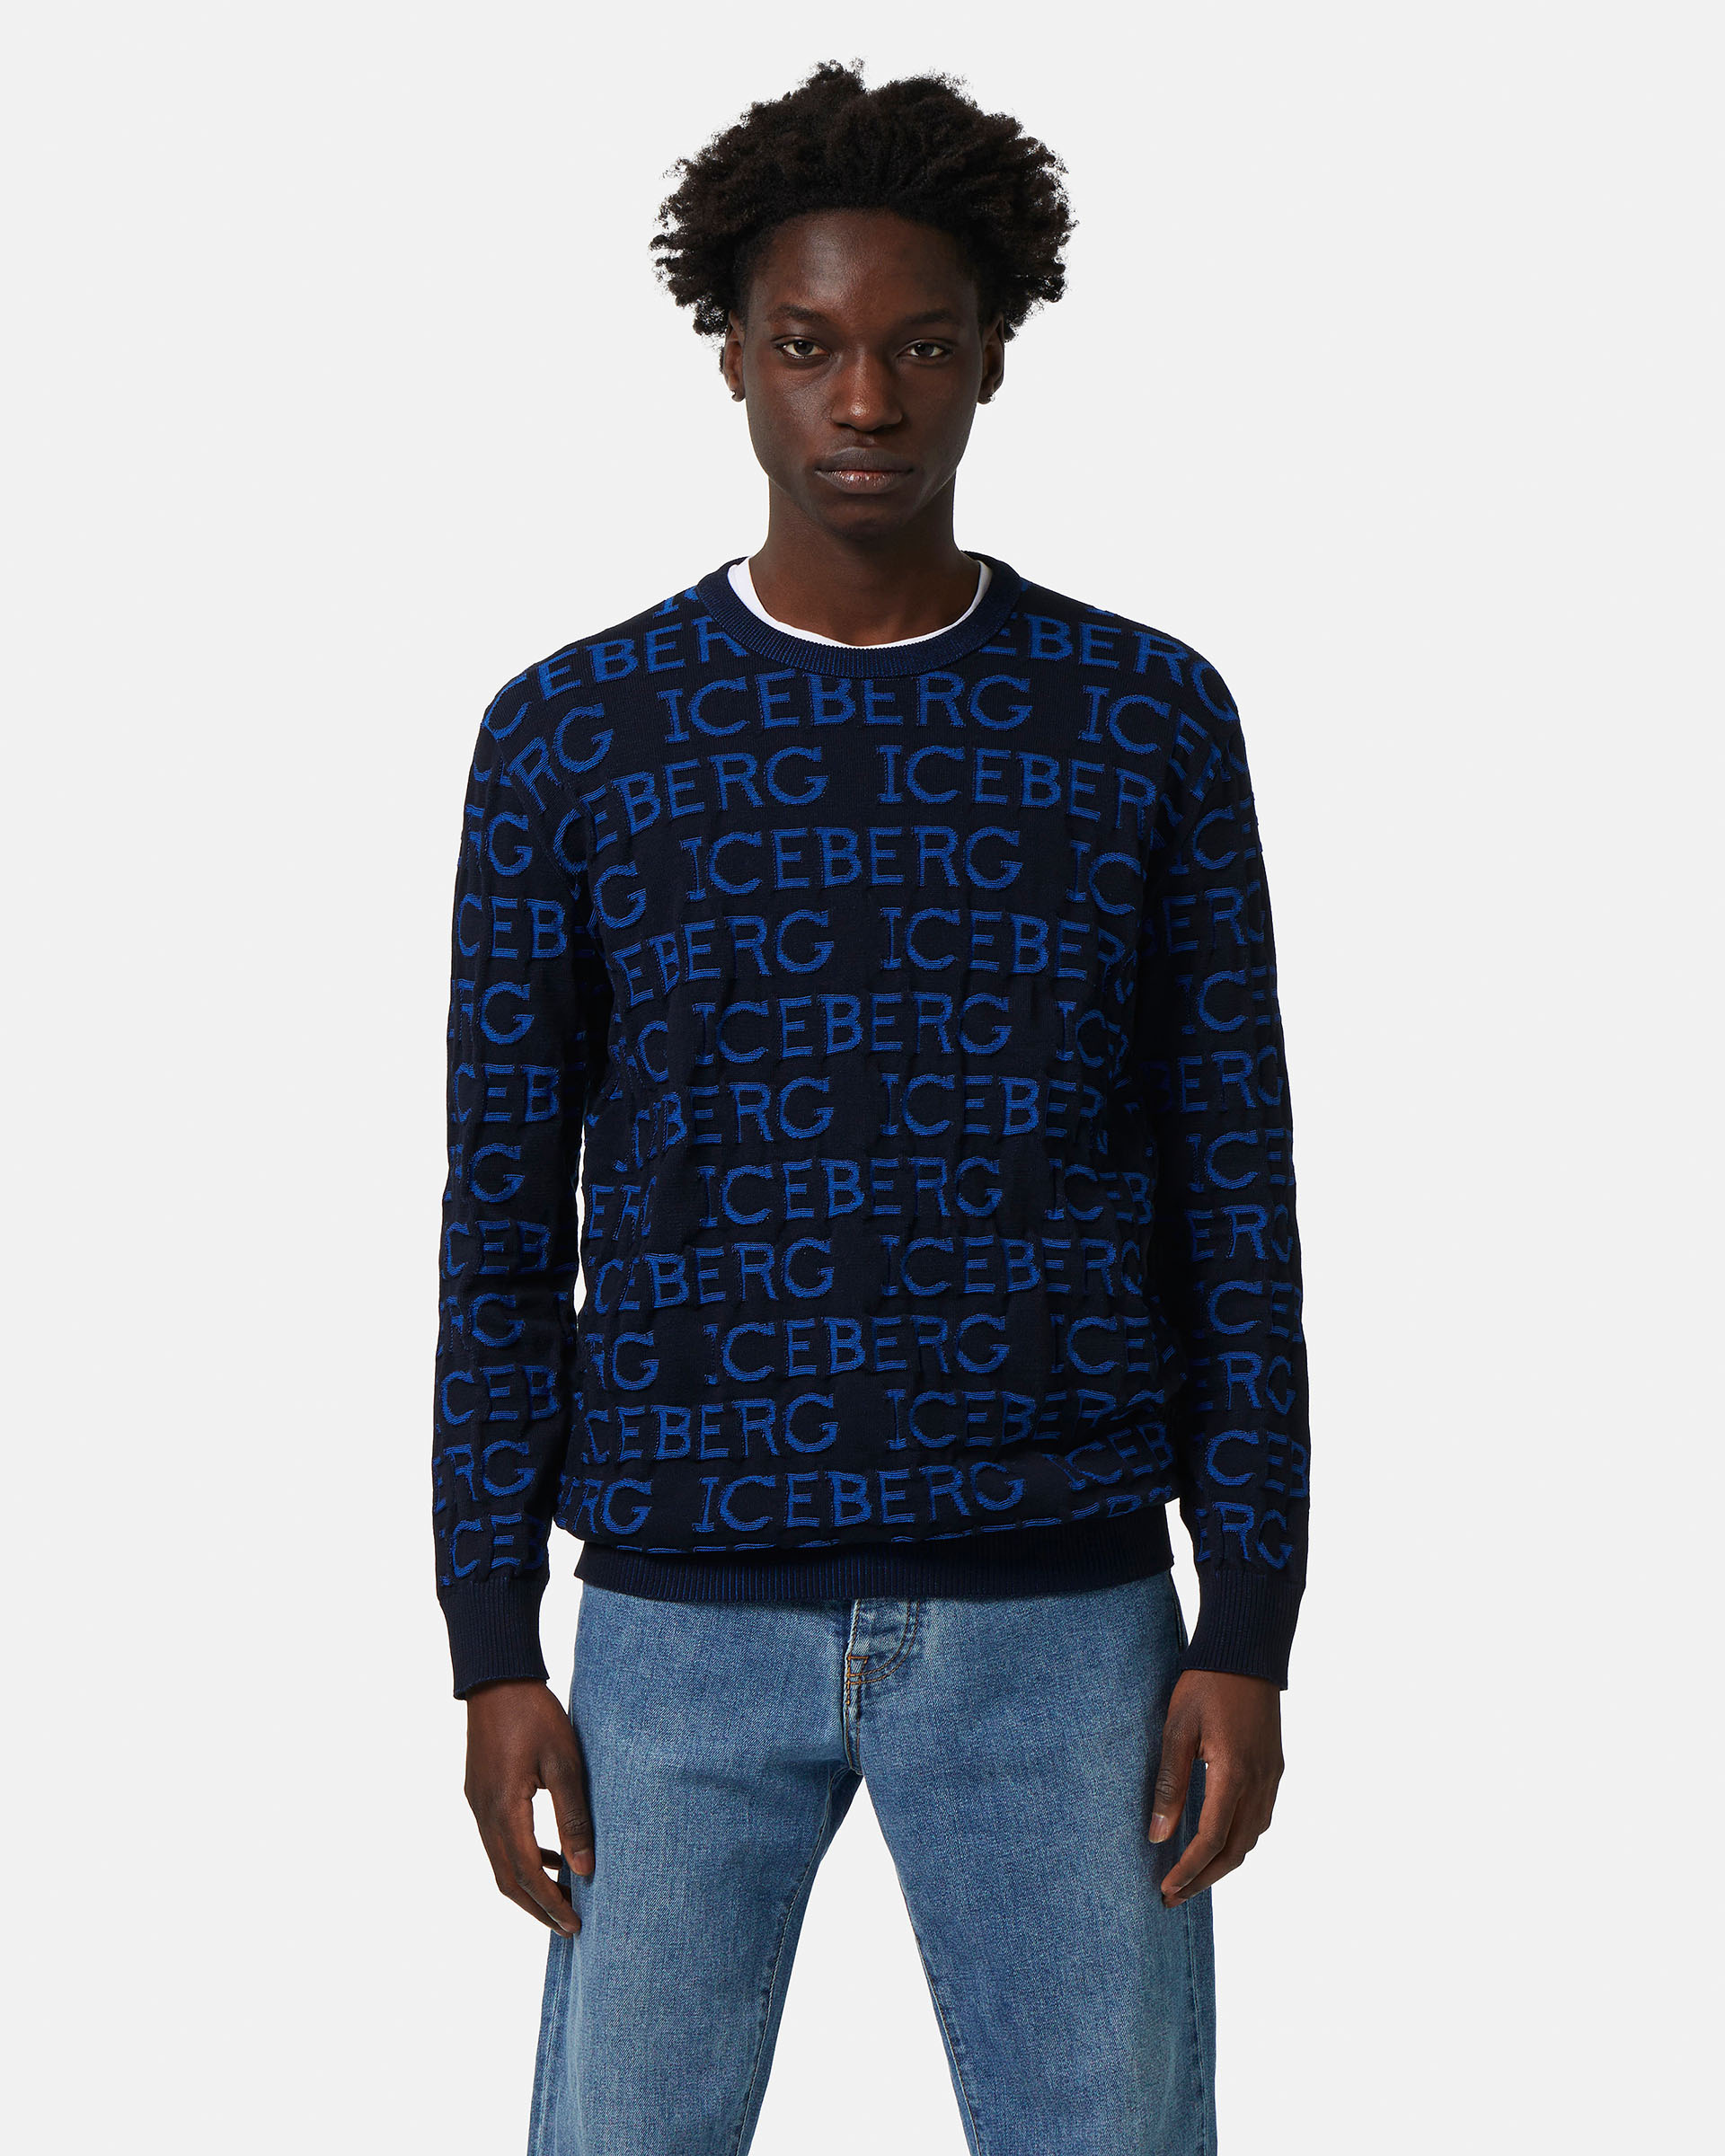 All-over 3D logo sweatshirt in navy blue